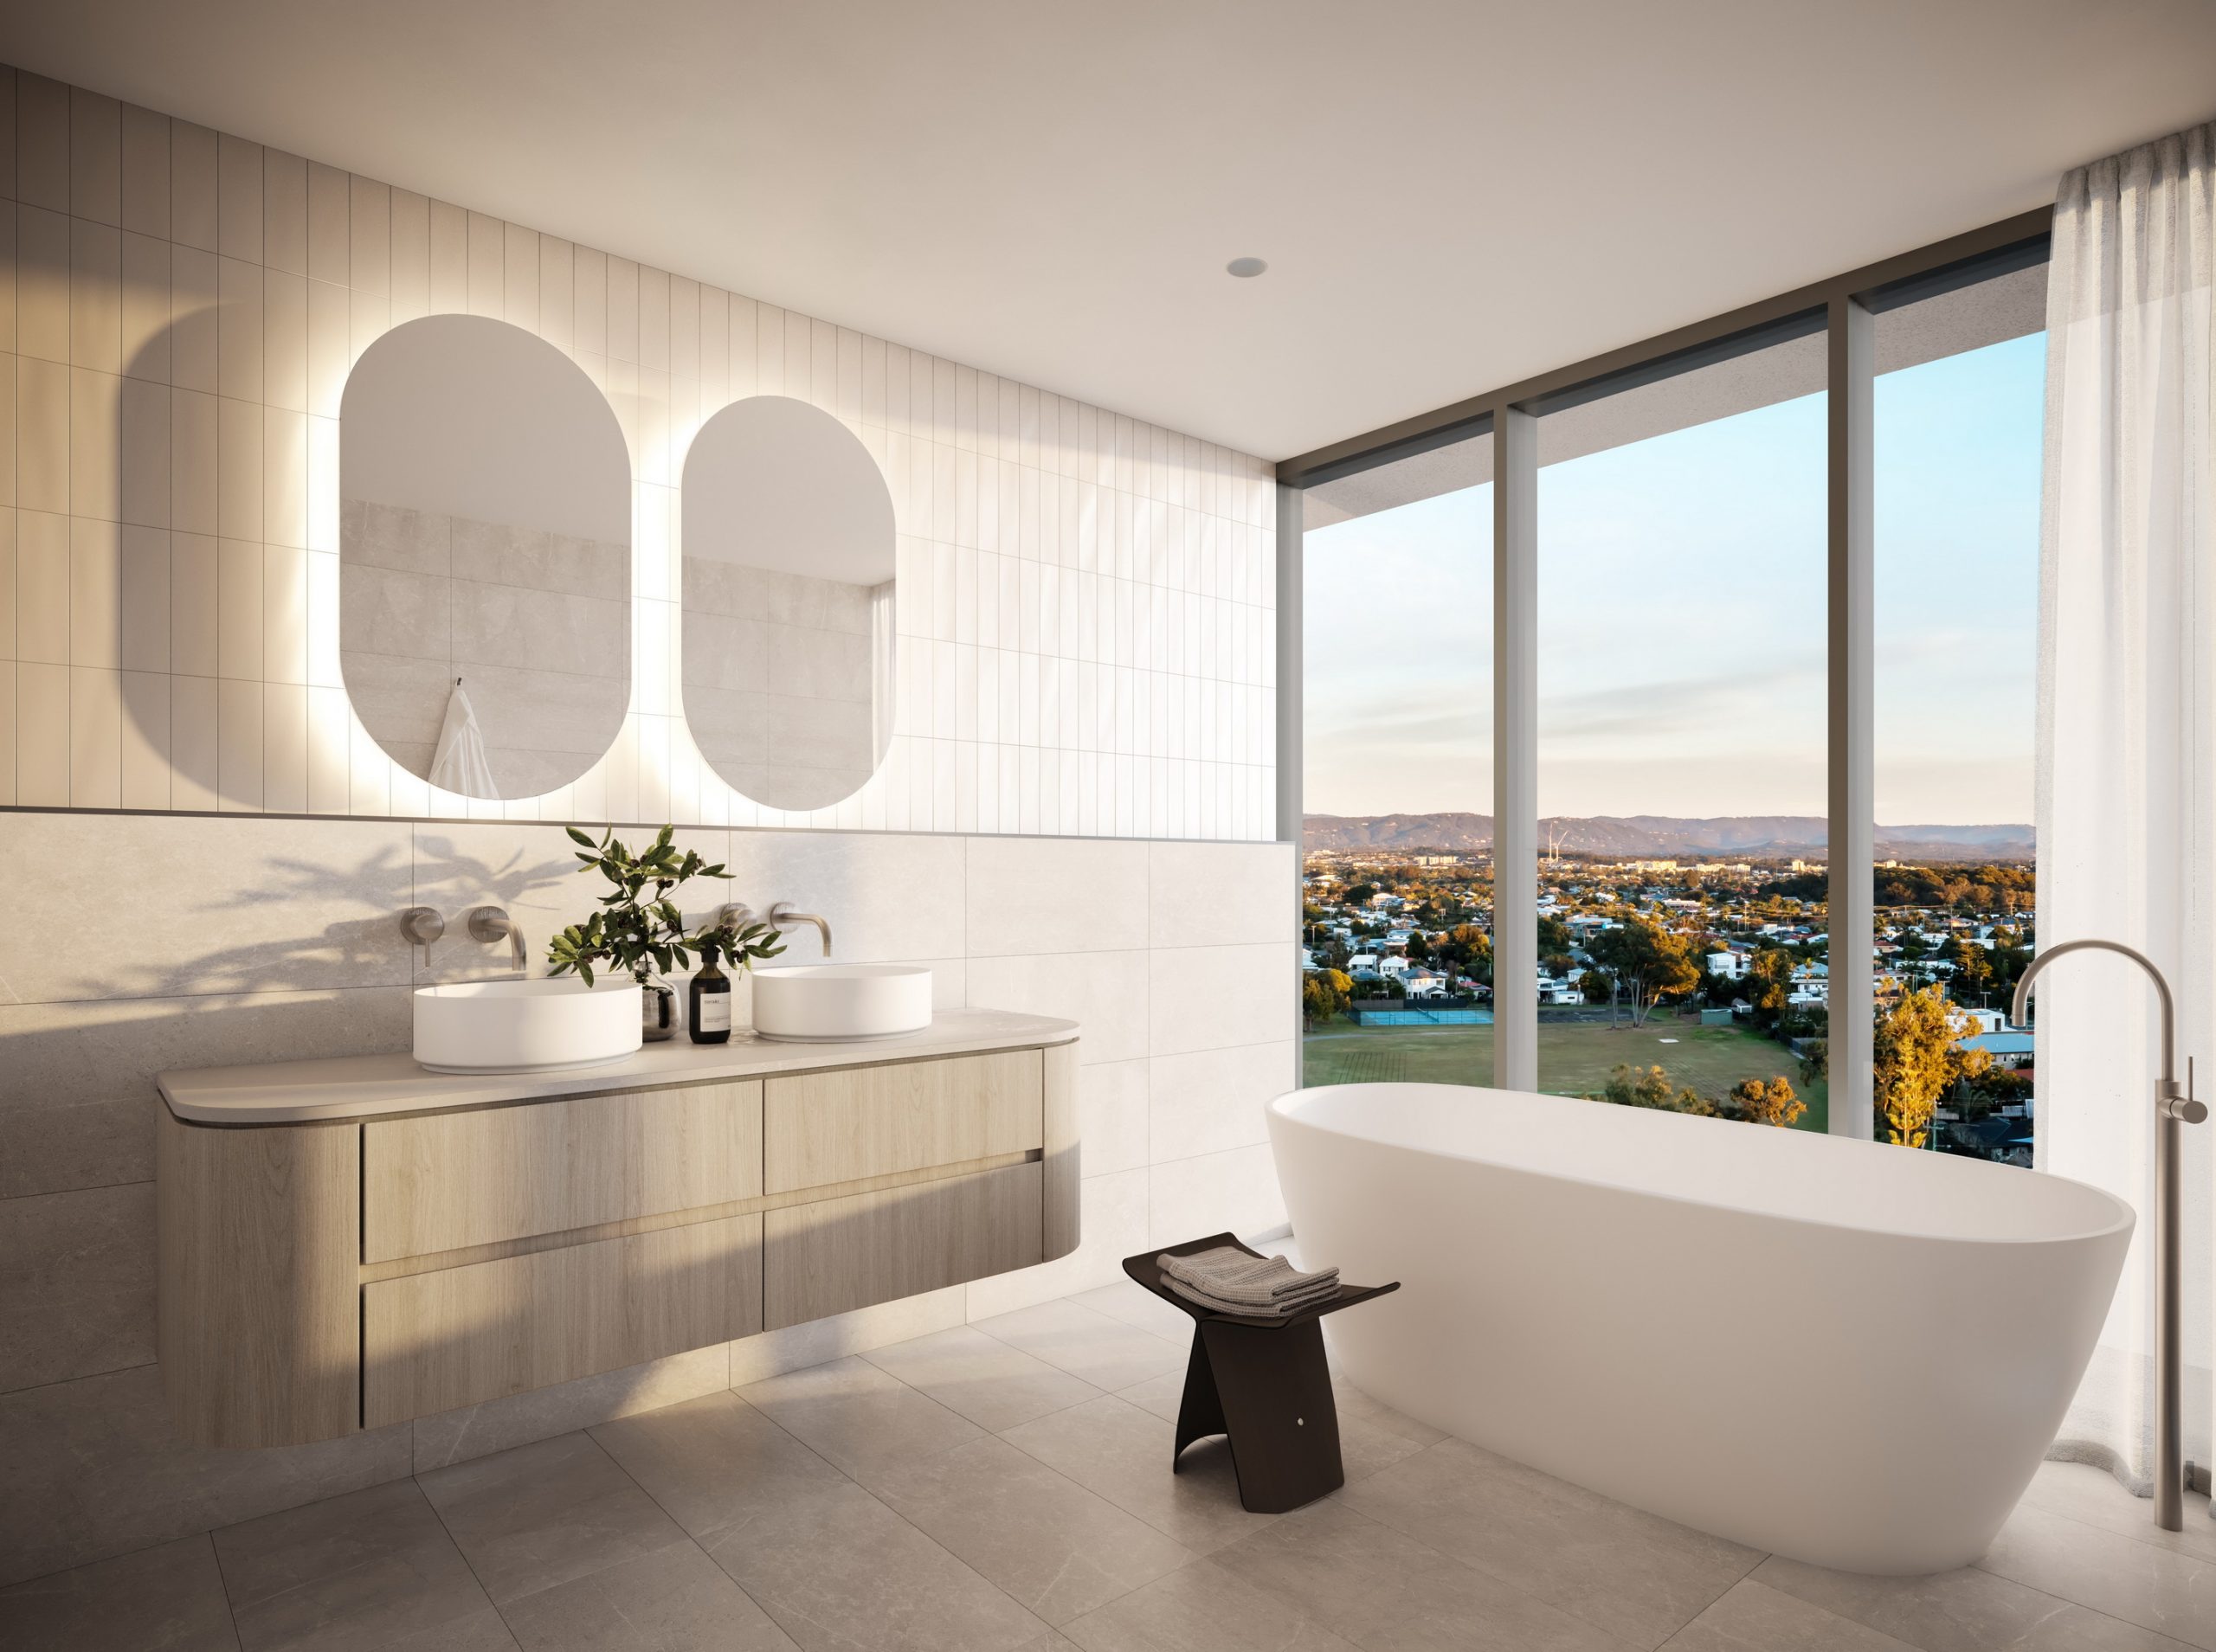 fkd-studio-architecture-render-augusta-first-ave-interior-bathroom